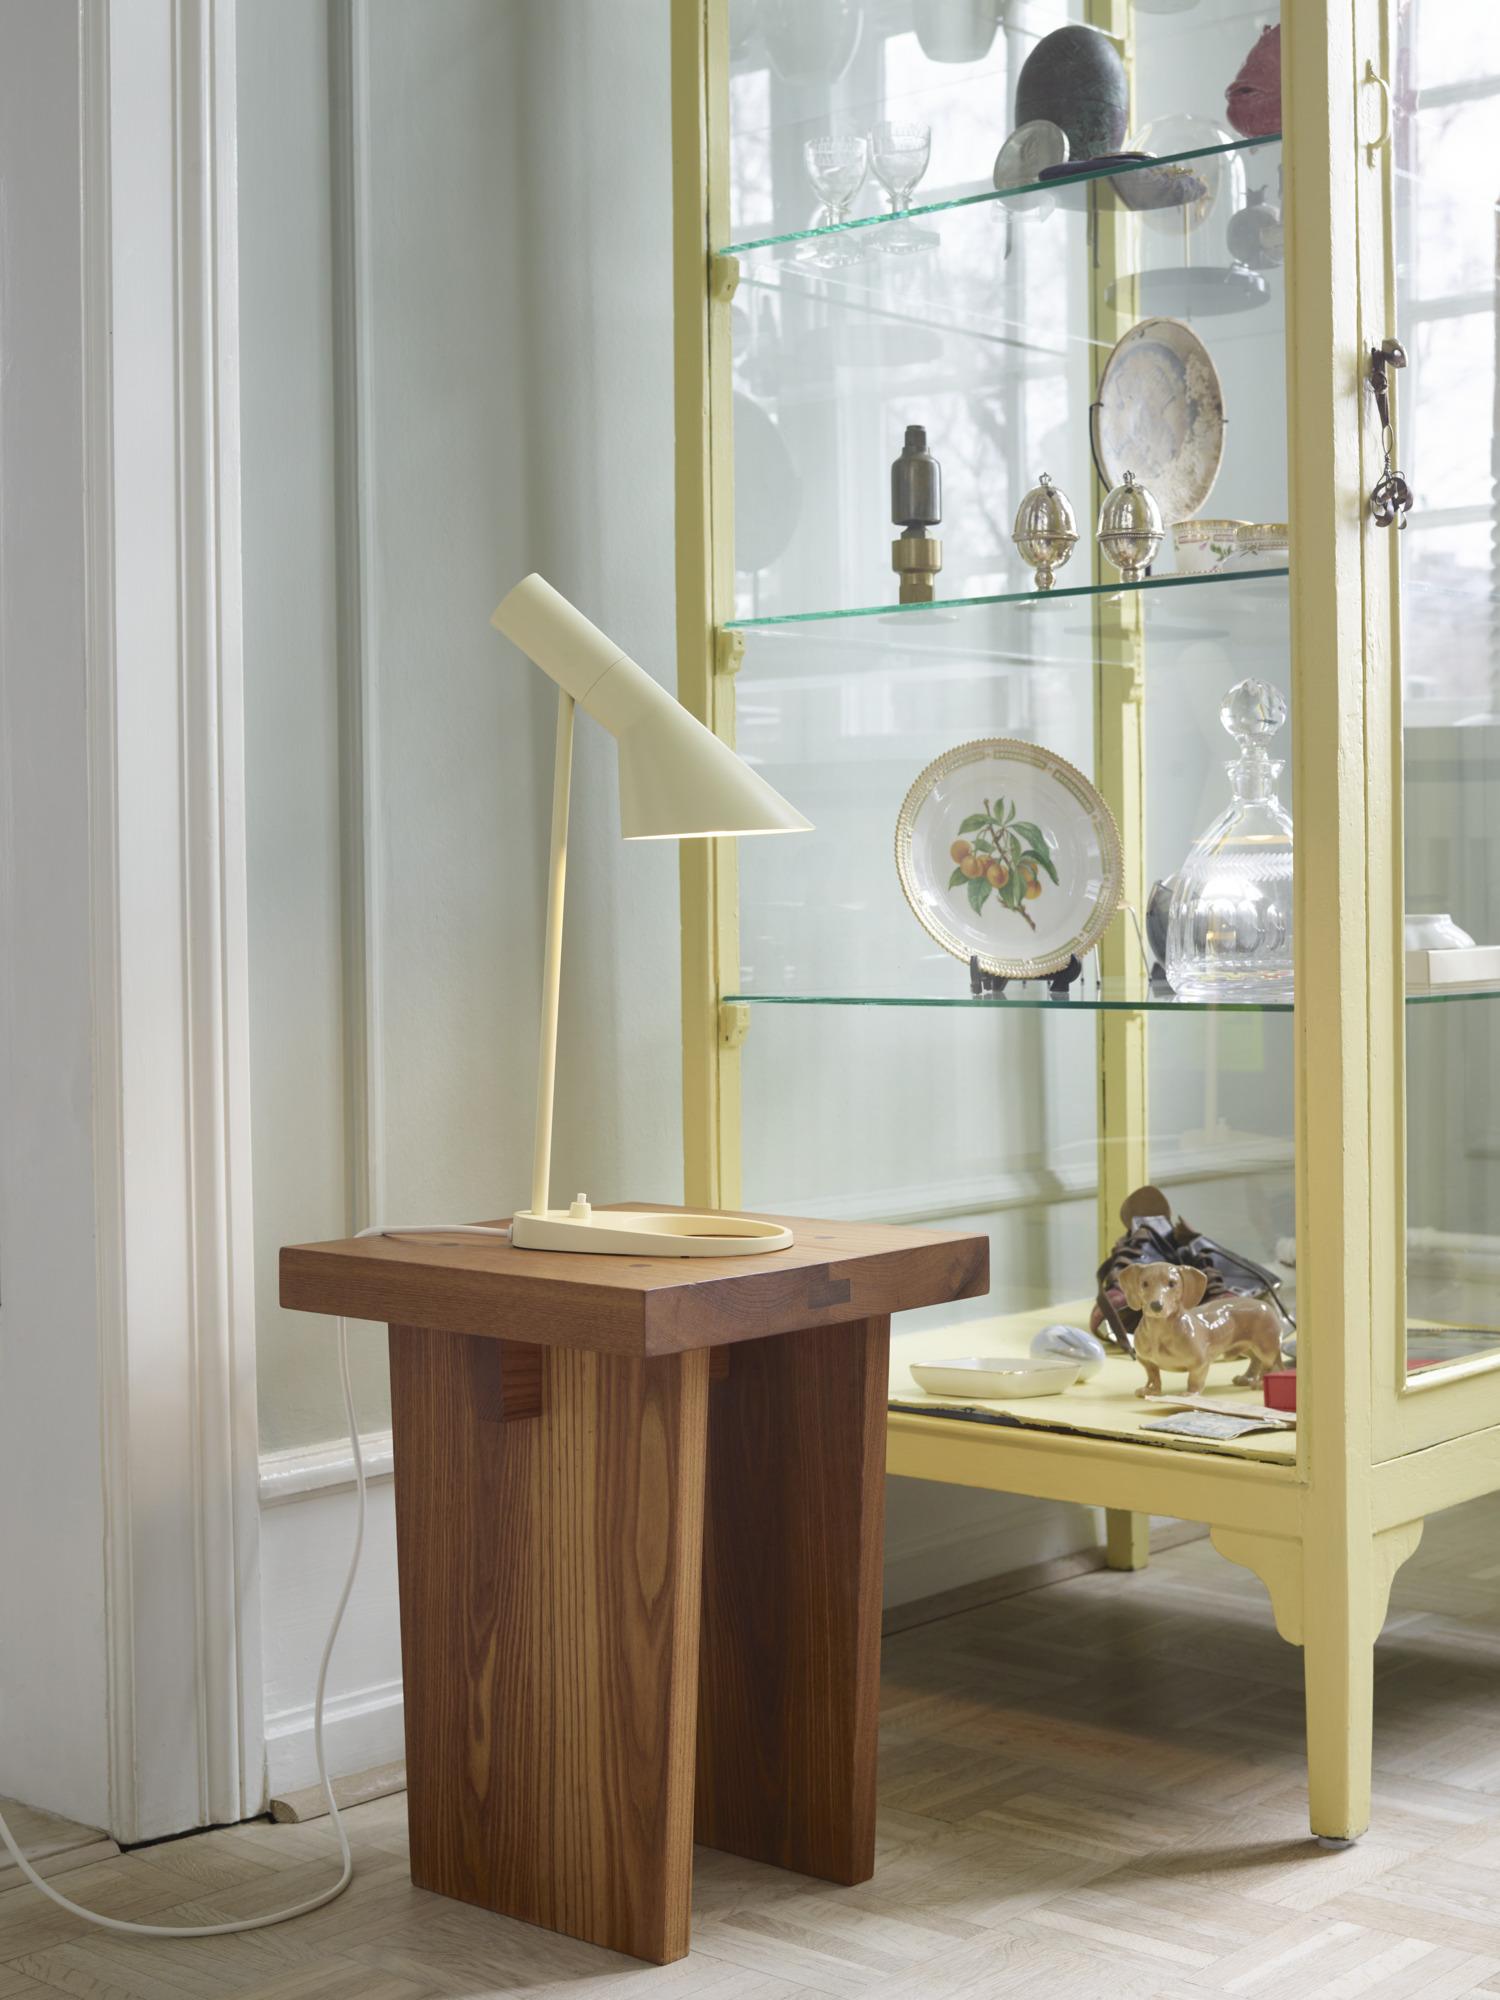 Arne Jacobsen 'AJ Mini' Table Lamp in White for Louis Poulsen For Sale 2